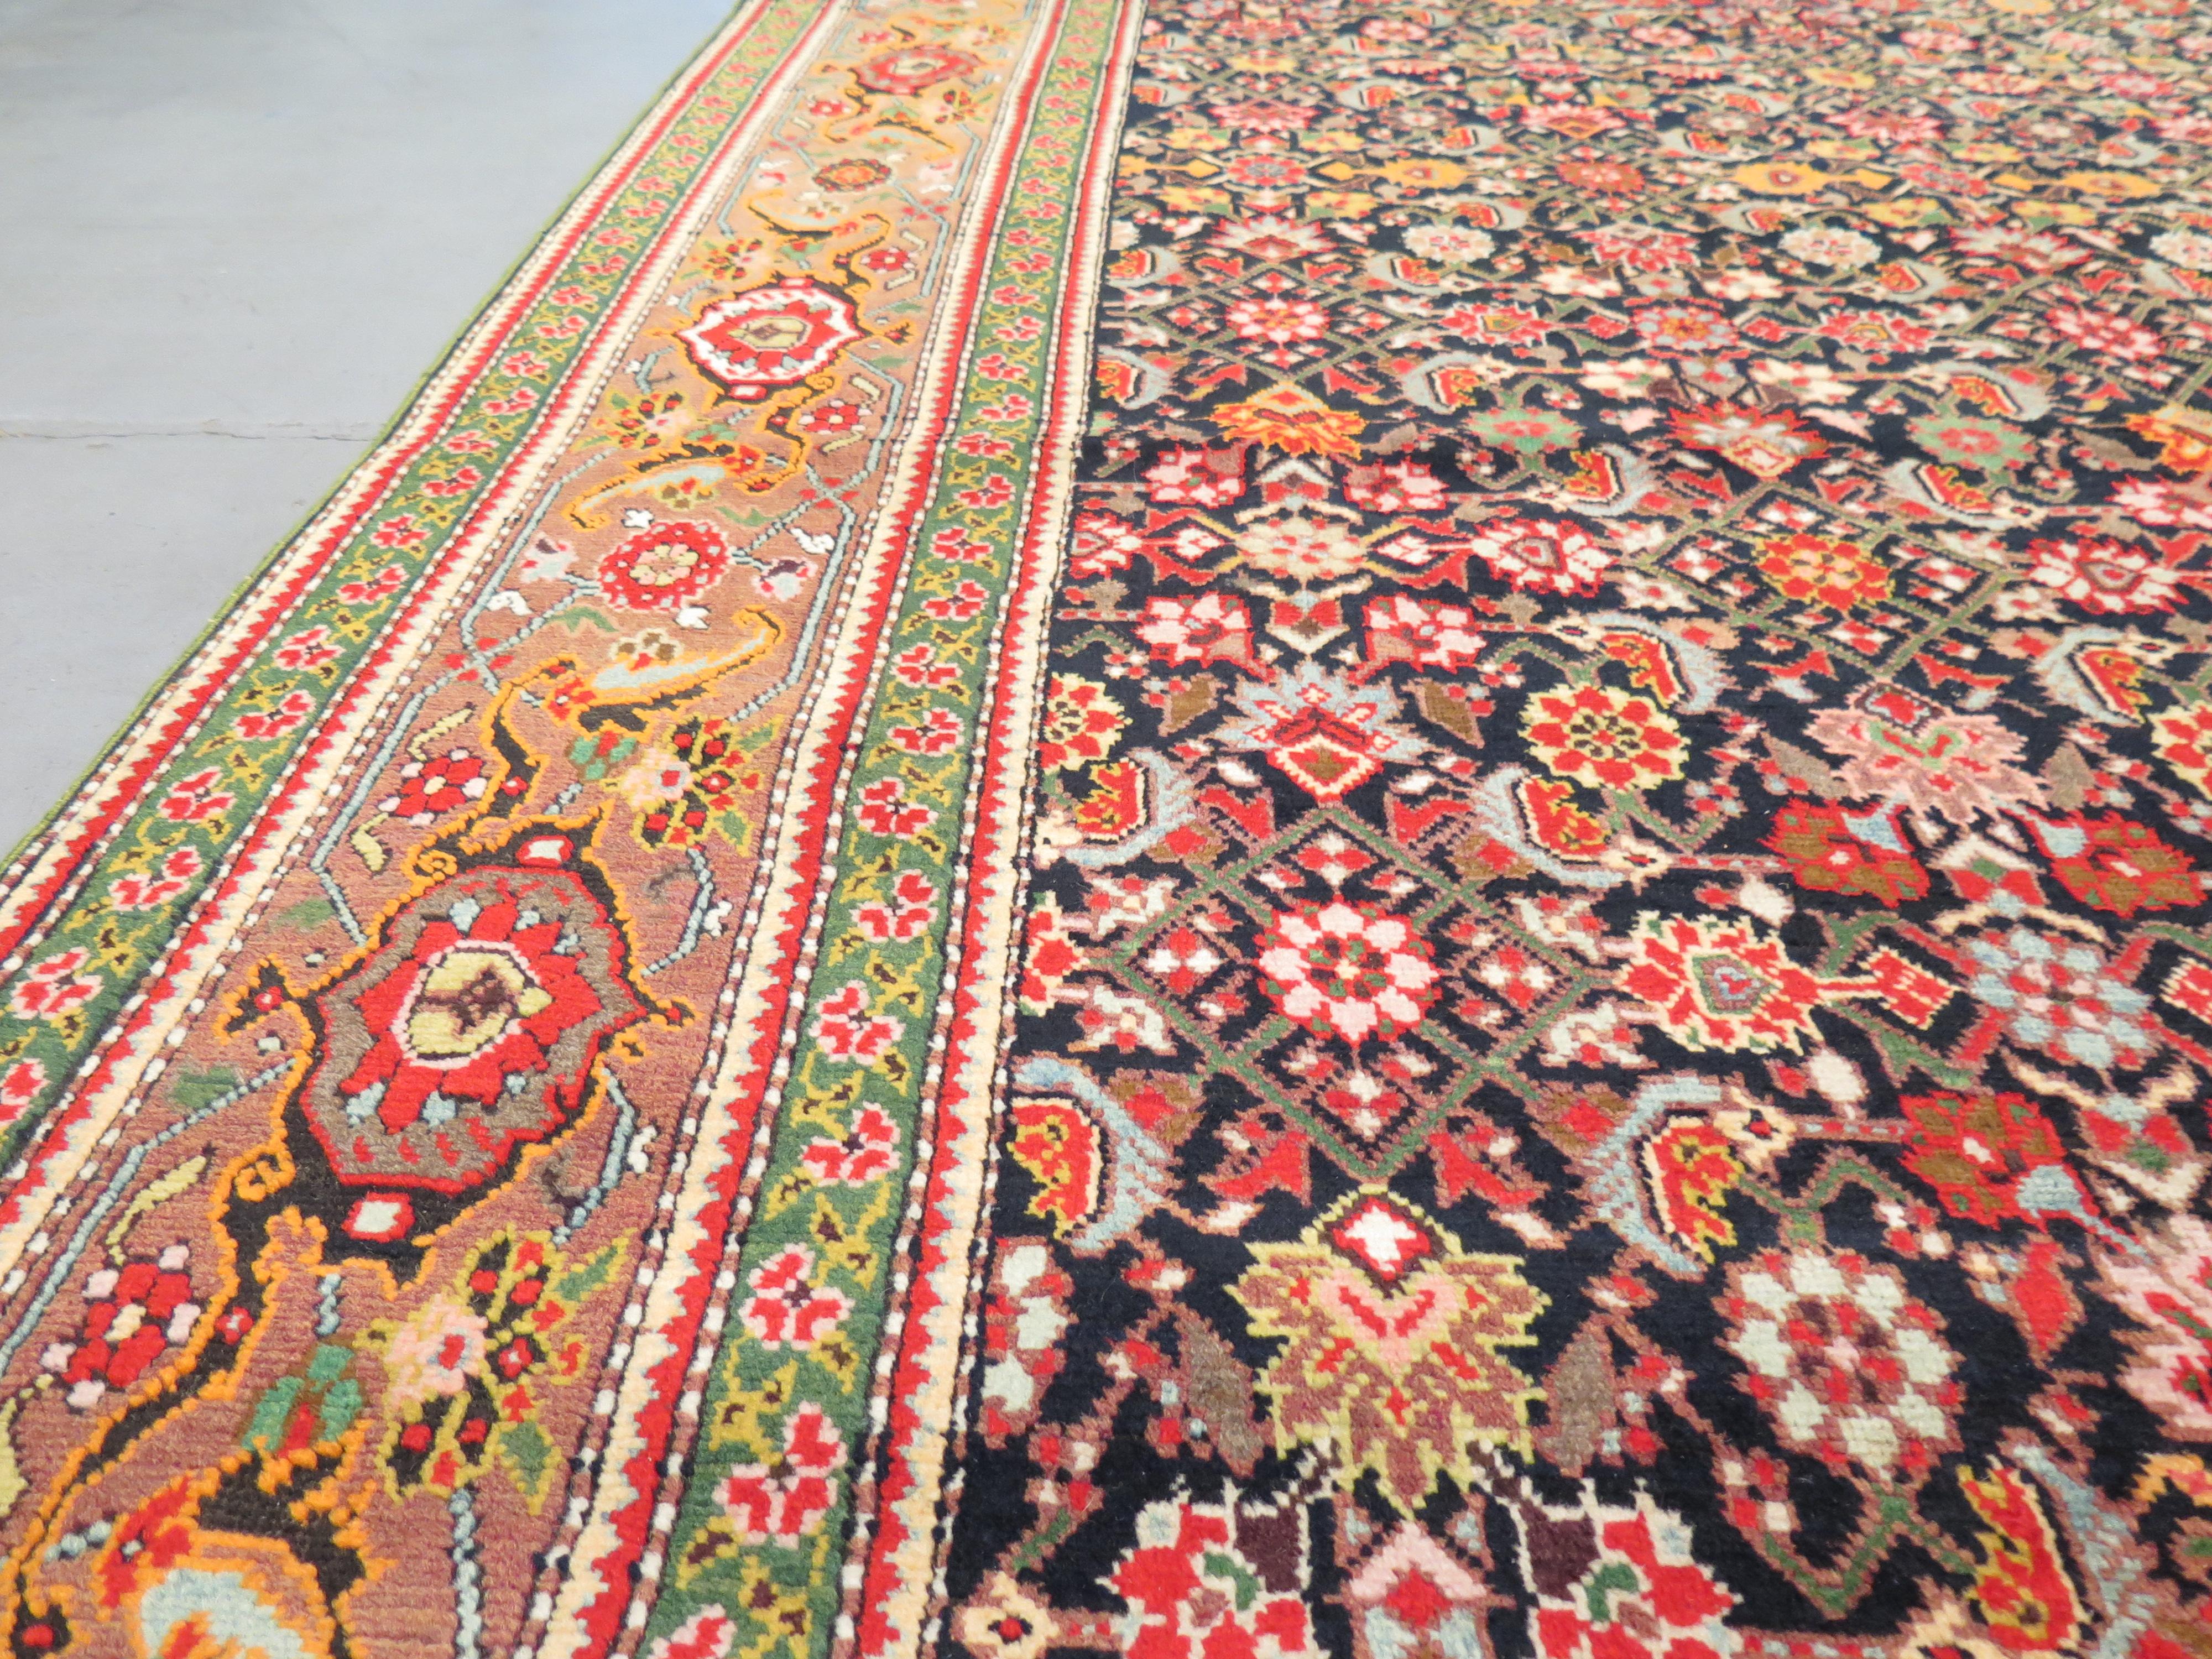 Antike Karabagh-Teppiche sind bei Sammlern und Designern sehr begehrt, da sie einige der ältesten und vielfältigsten Designs aller kaukasischen Knüpfungen aufweisen und vielleicht das Beste an Qualität und Kunstfertigkeit unter den Stücken aus